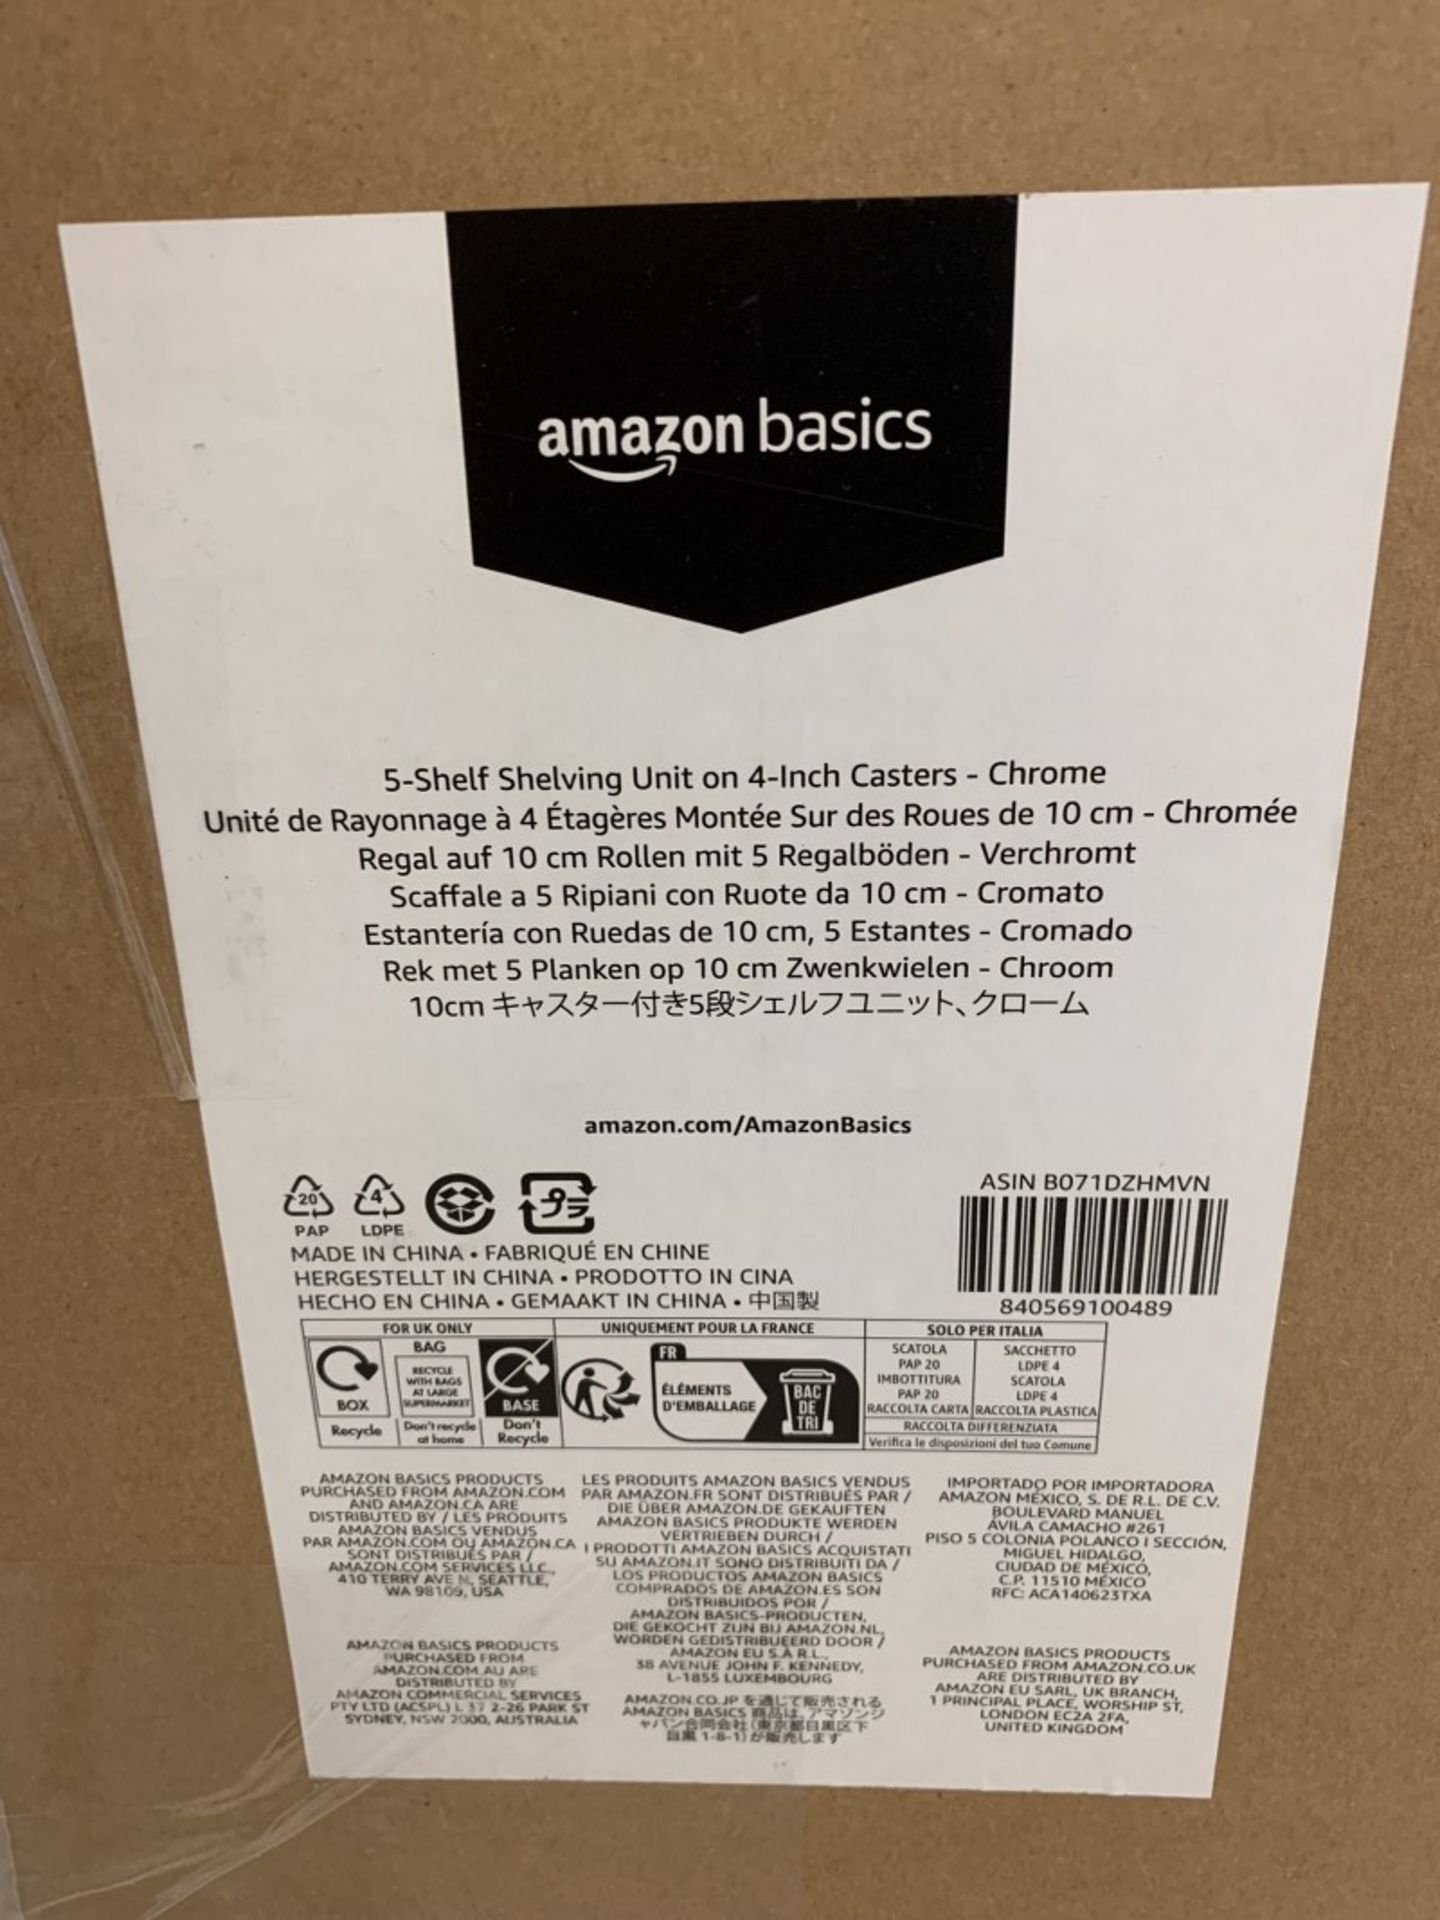 Amazon Basics - 5 Shelf Shelving Unit On 4 Inch Casters - Chrome - Image 2 of 3